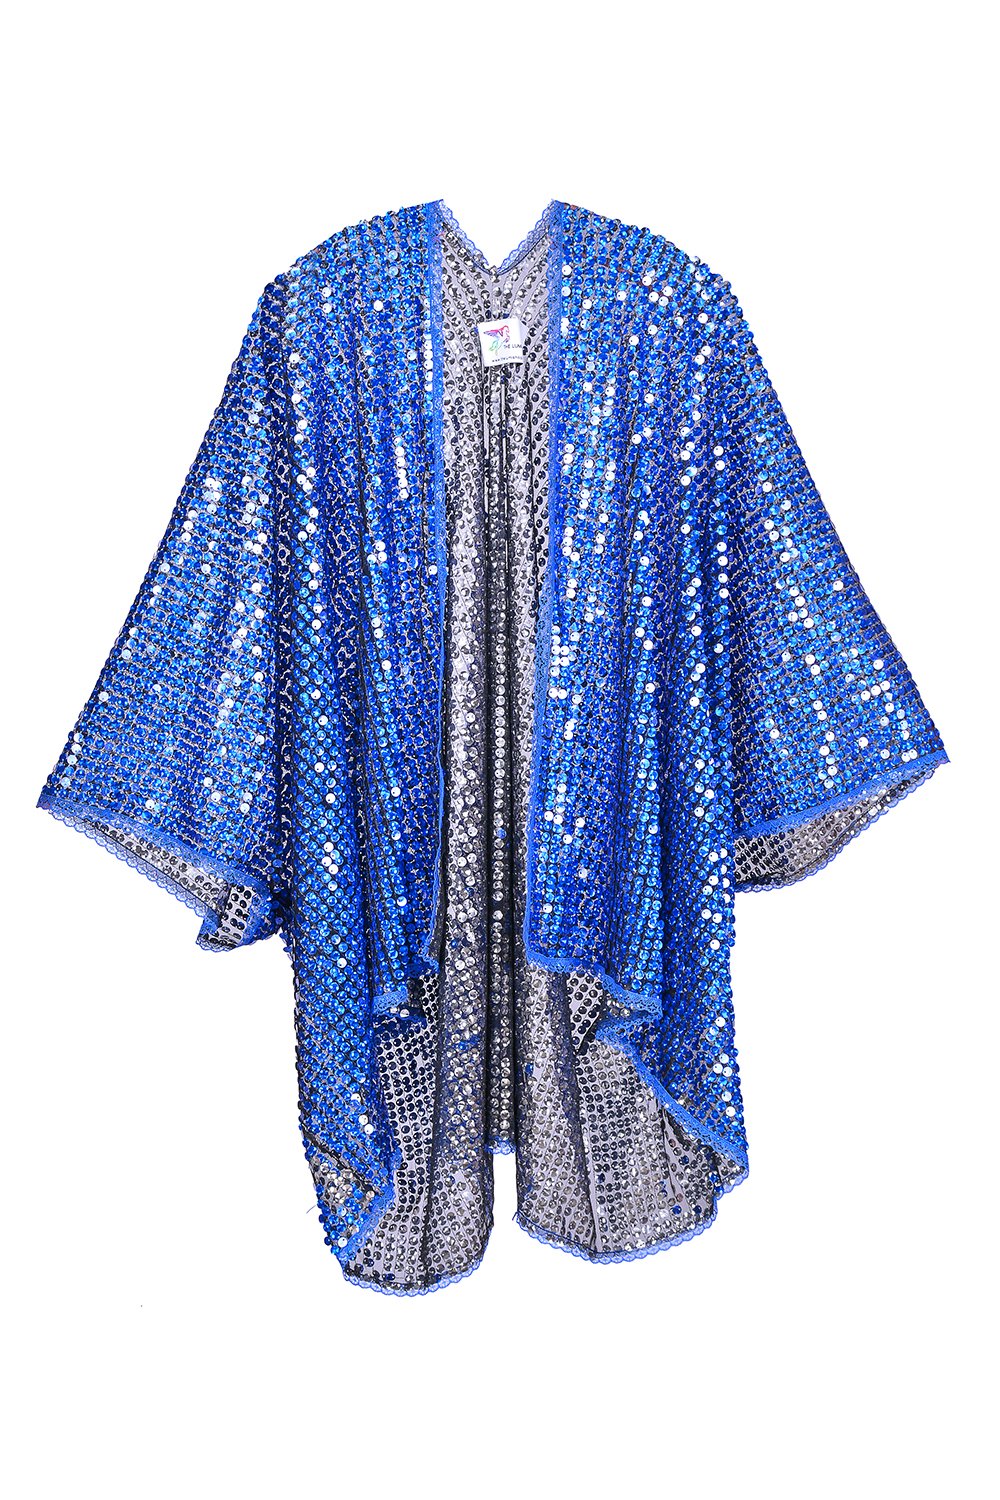 Sequin Kimono - Deep Ocean